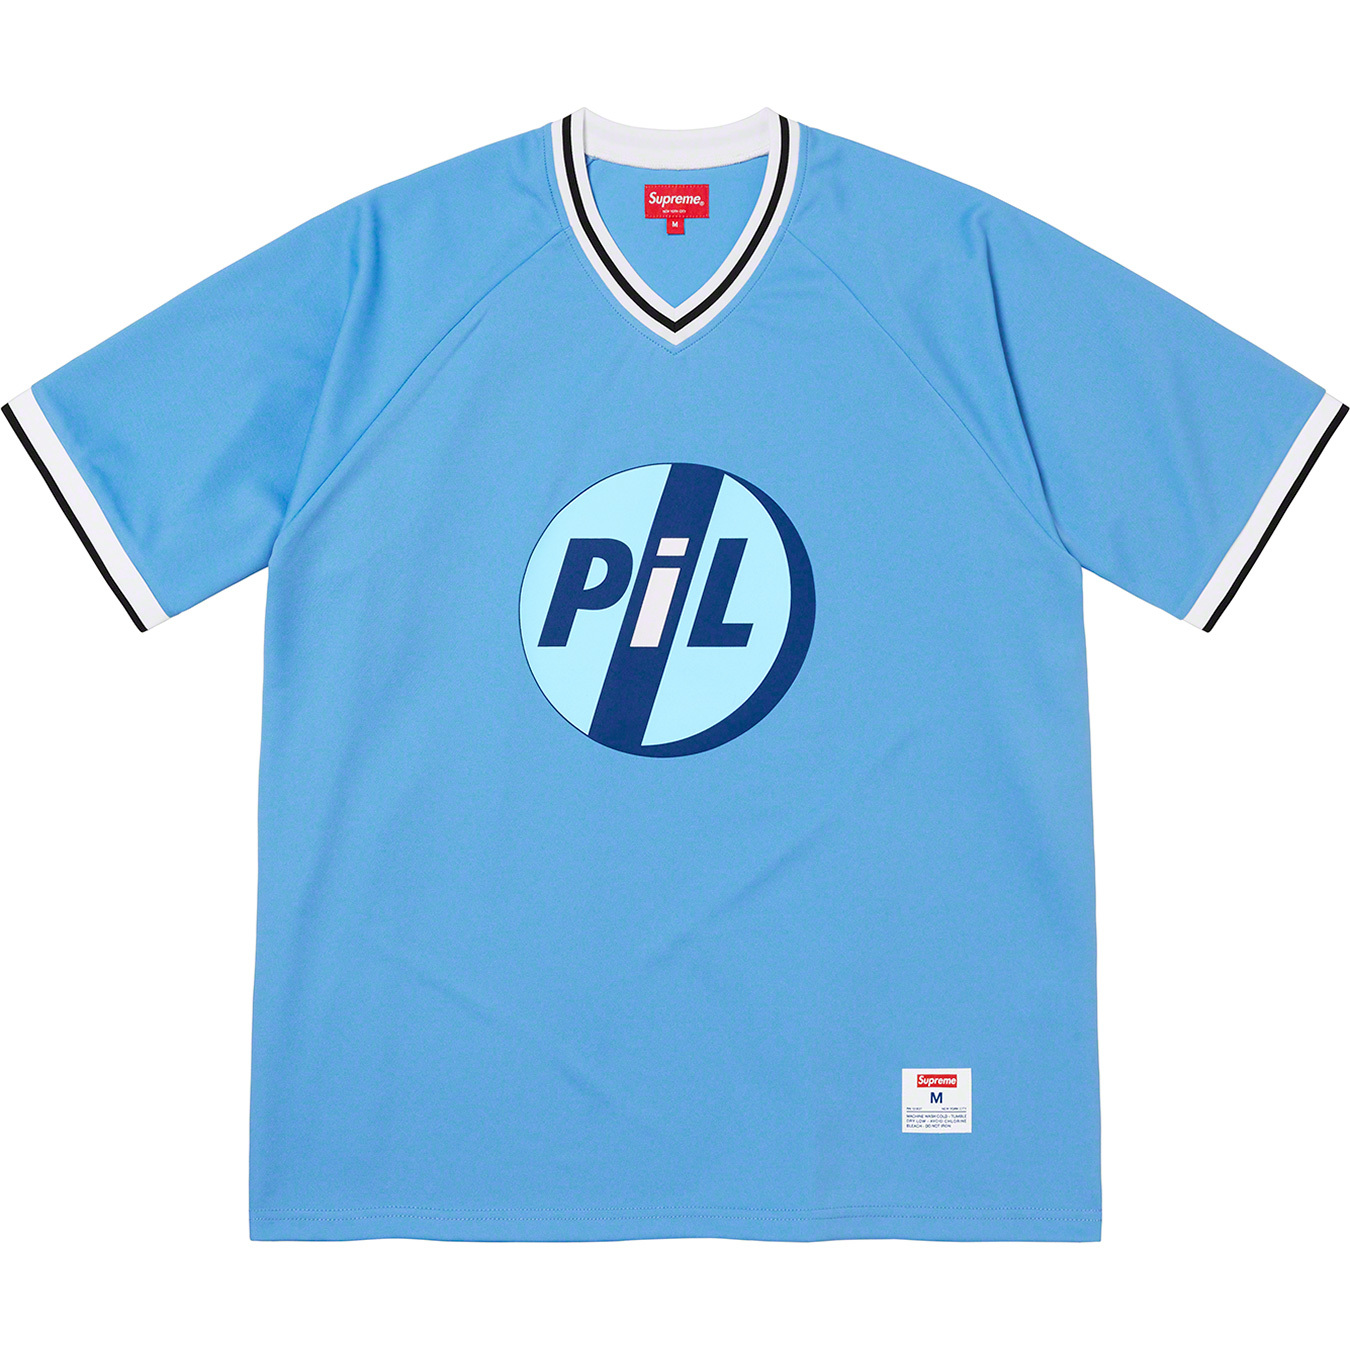 Supreme/PiL Baseball Top